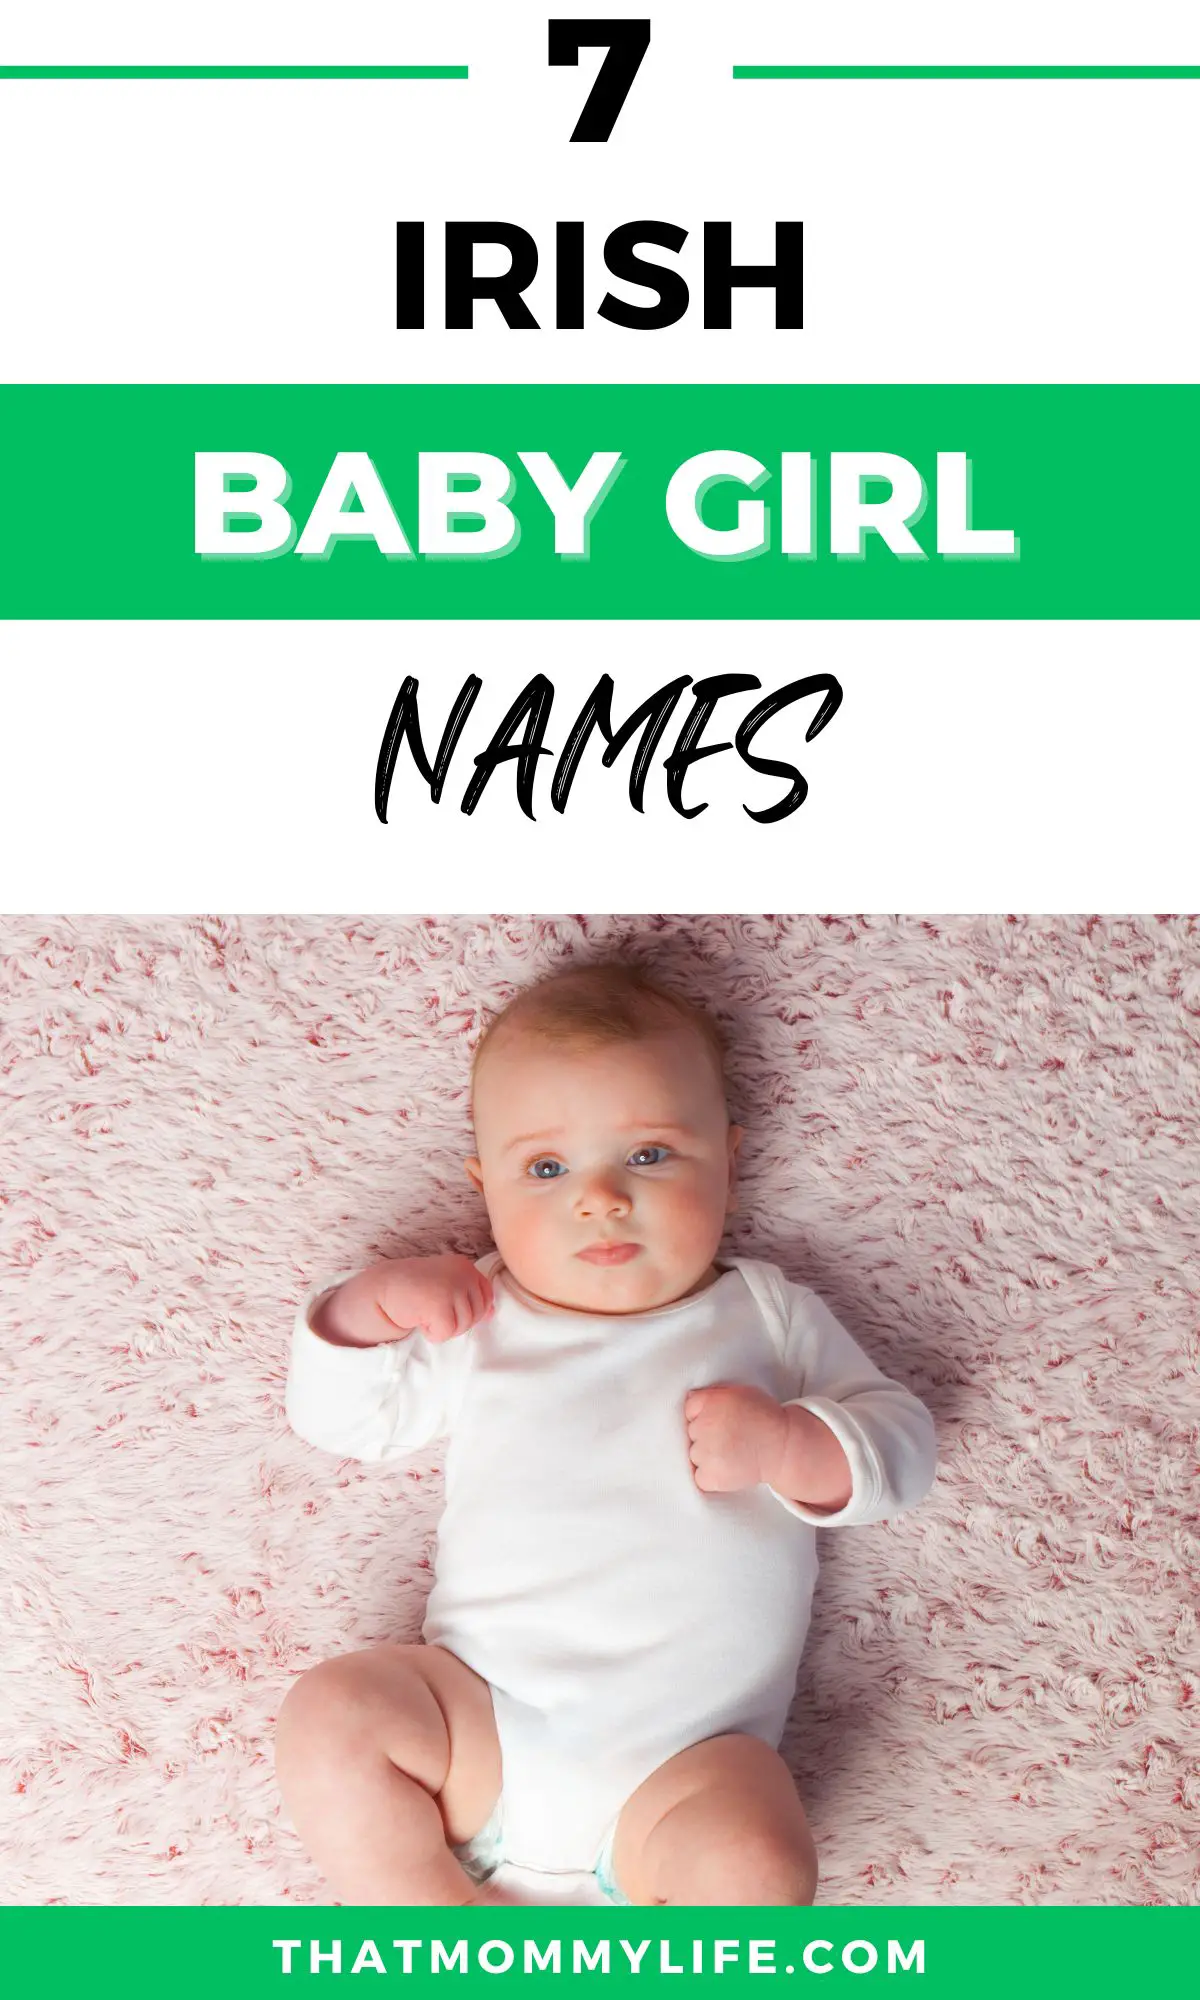 irish baby girl names